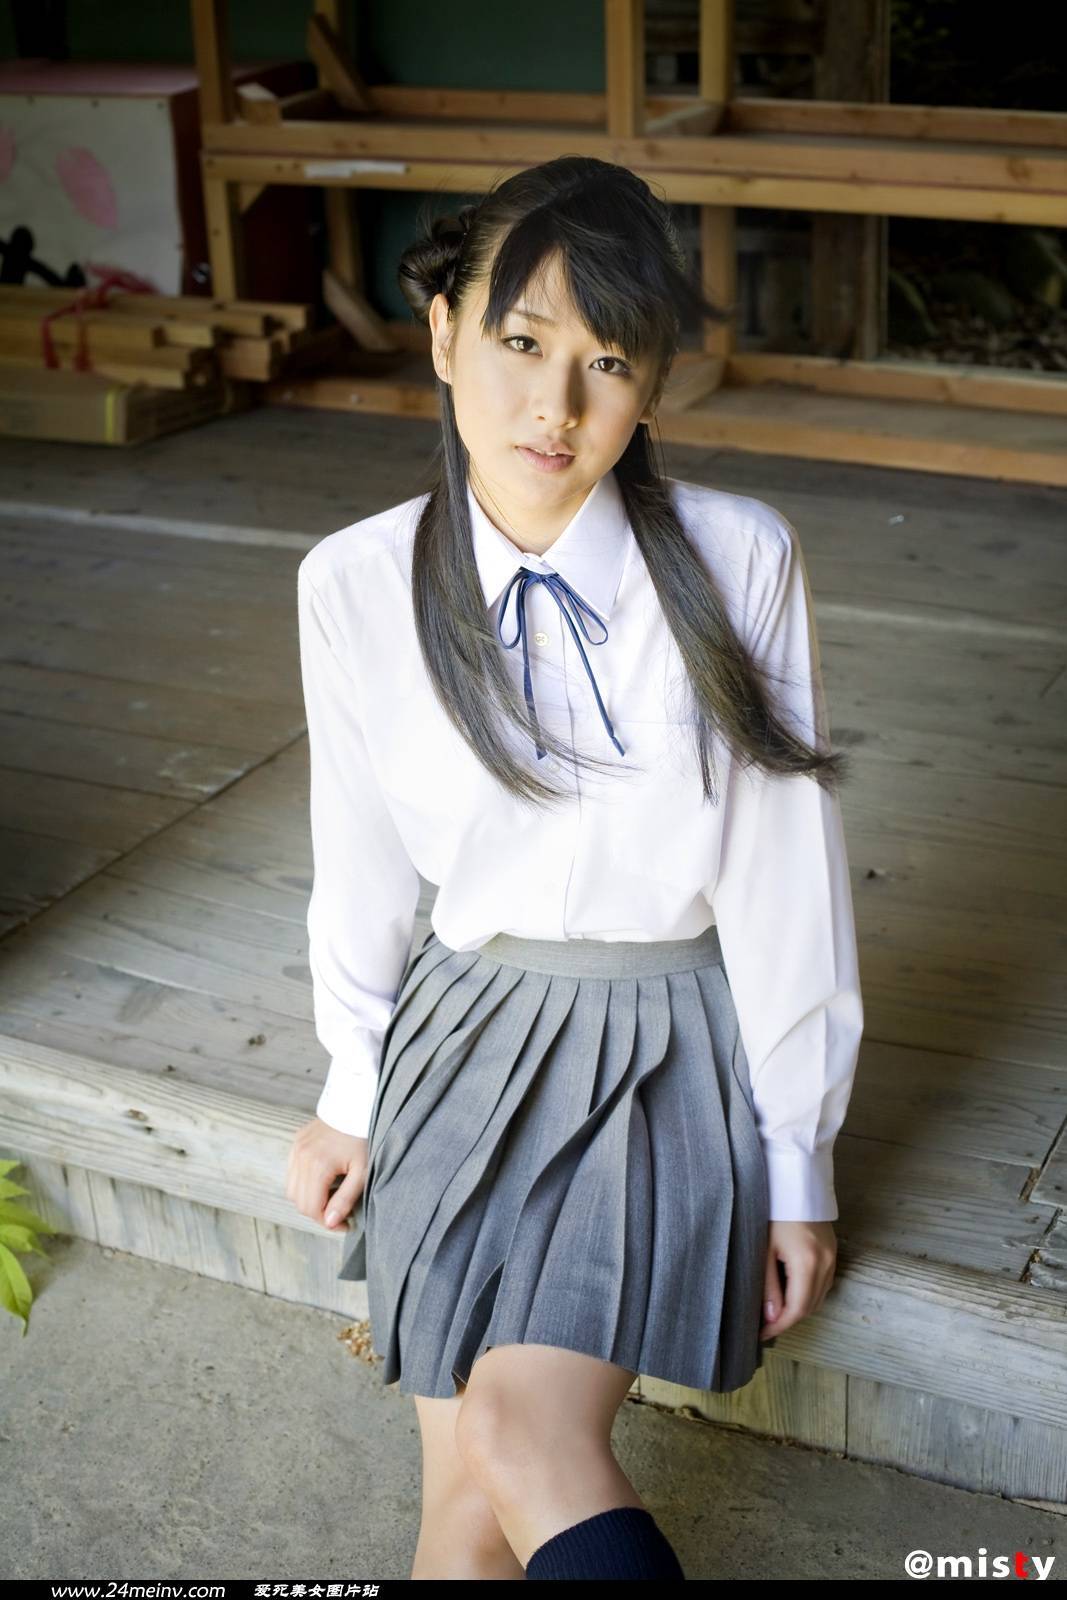 Japanese gravure girl